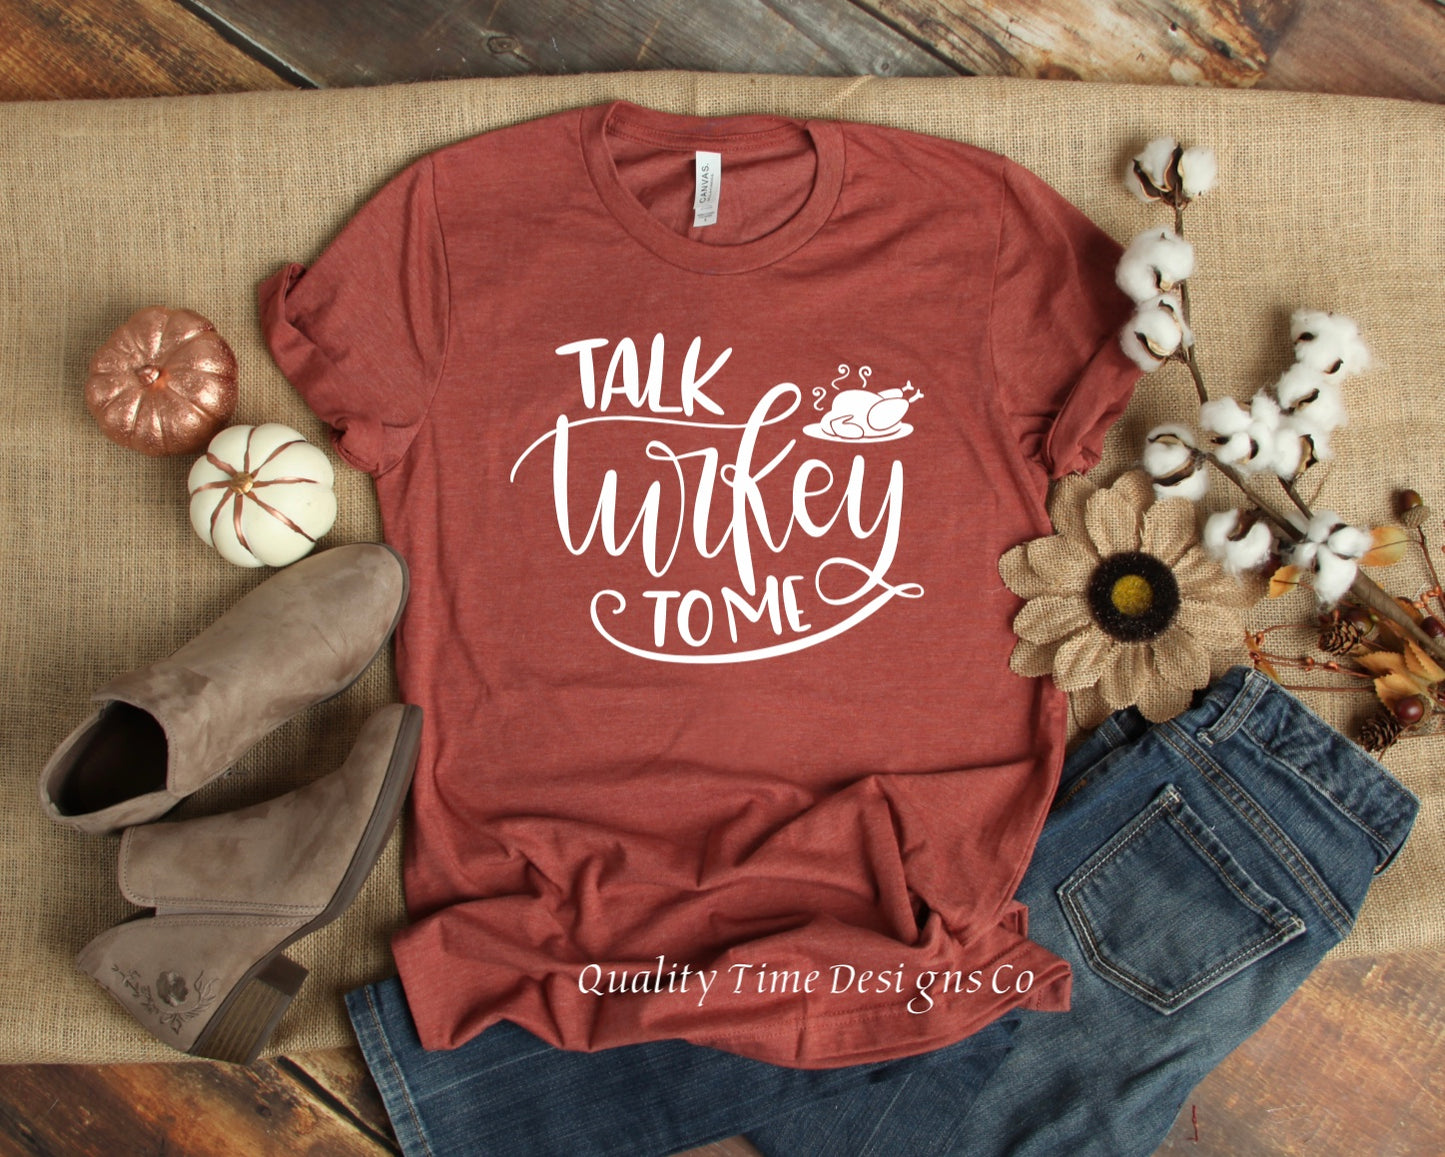 Talk Turkey to me t-shirt 